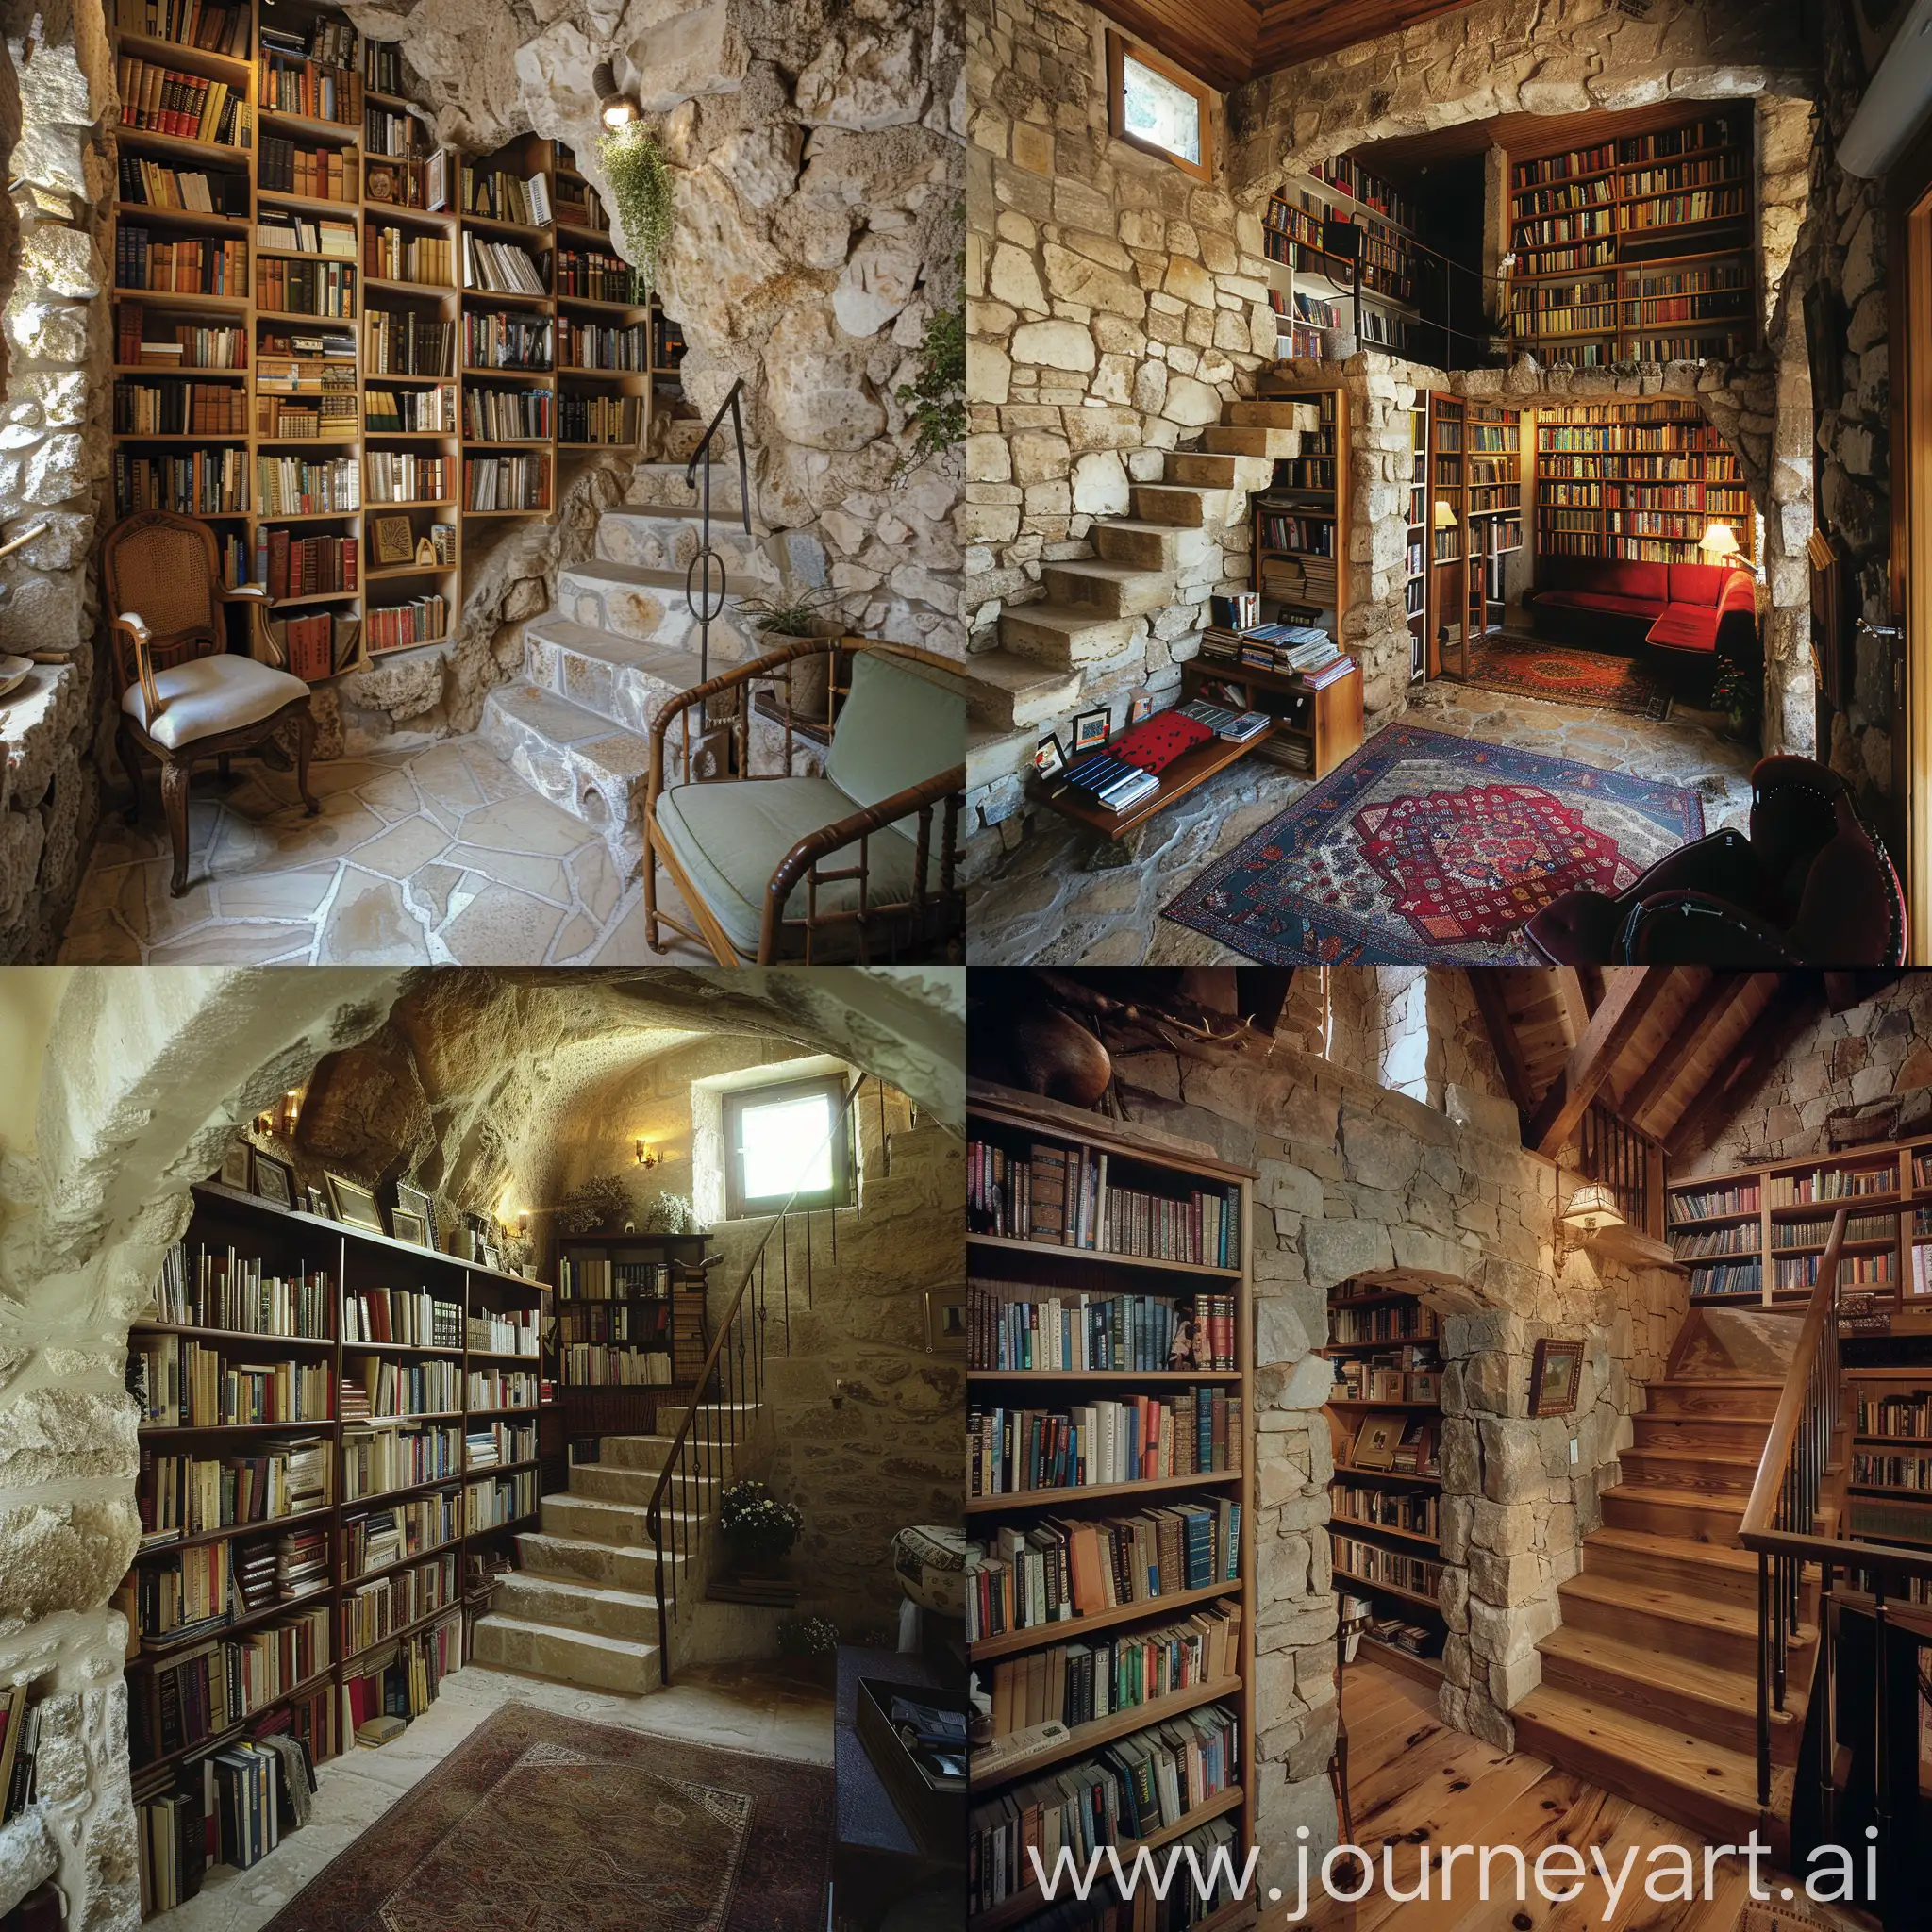 Изображение интерьера каменного дома с книжными полками, которые скрывают проход к секретной комнате или комнате отдыха.